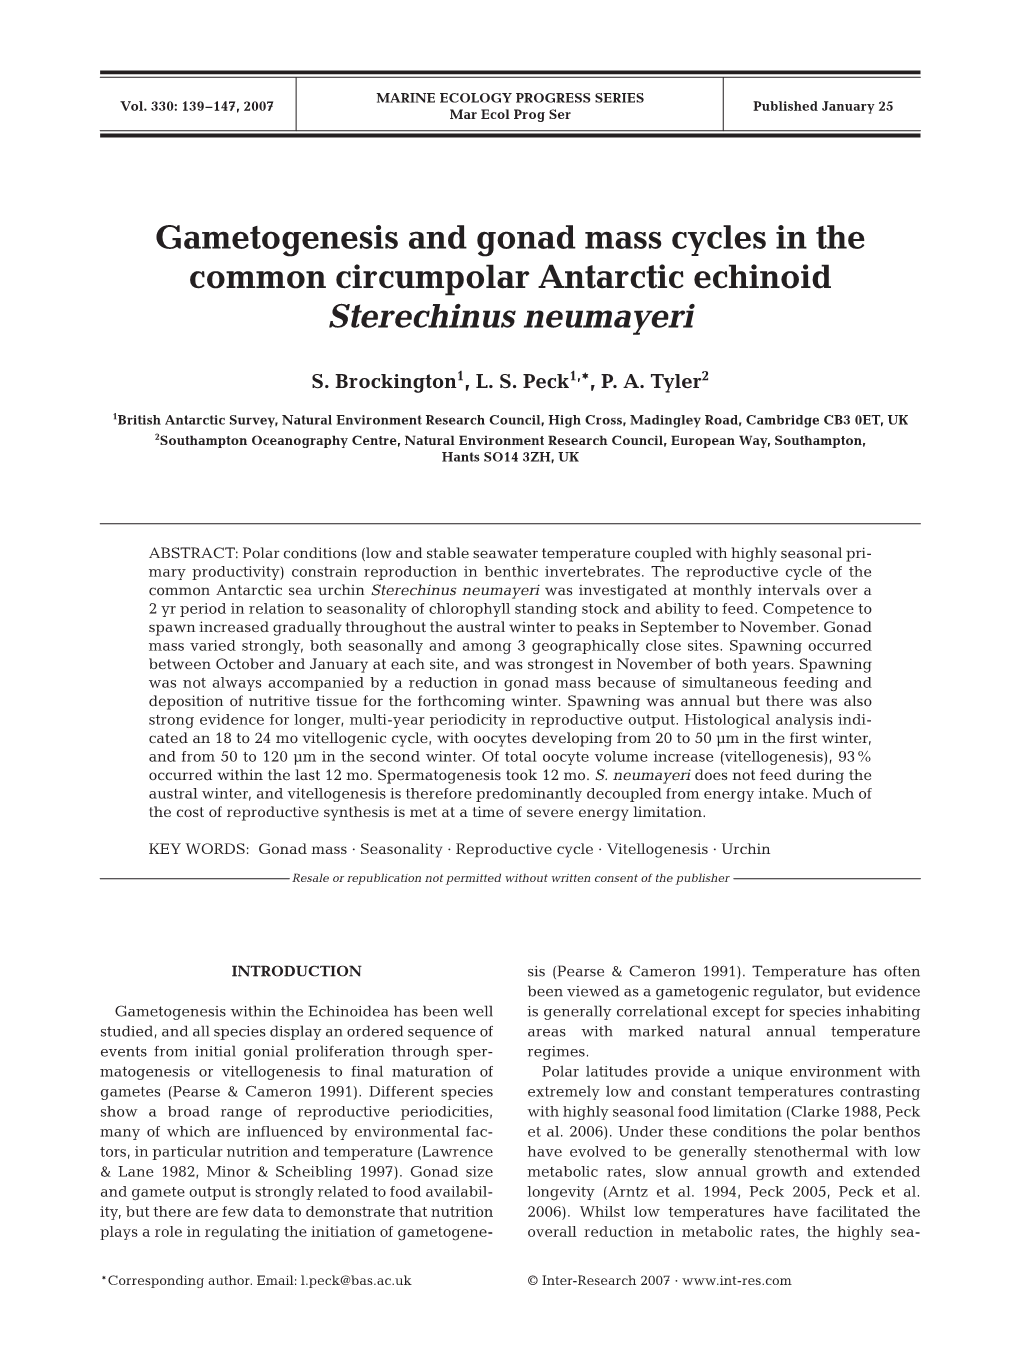 Gametogenesis and Gonad Mass Cycles in the Common Circumpolar Antarctic Echinoid Sterechinus Neumayeri